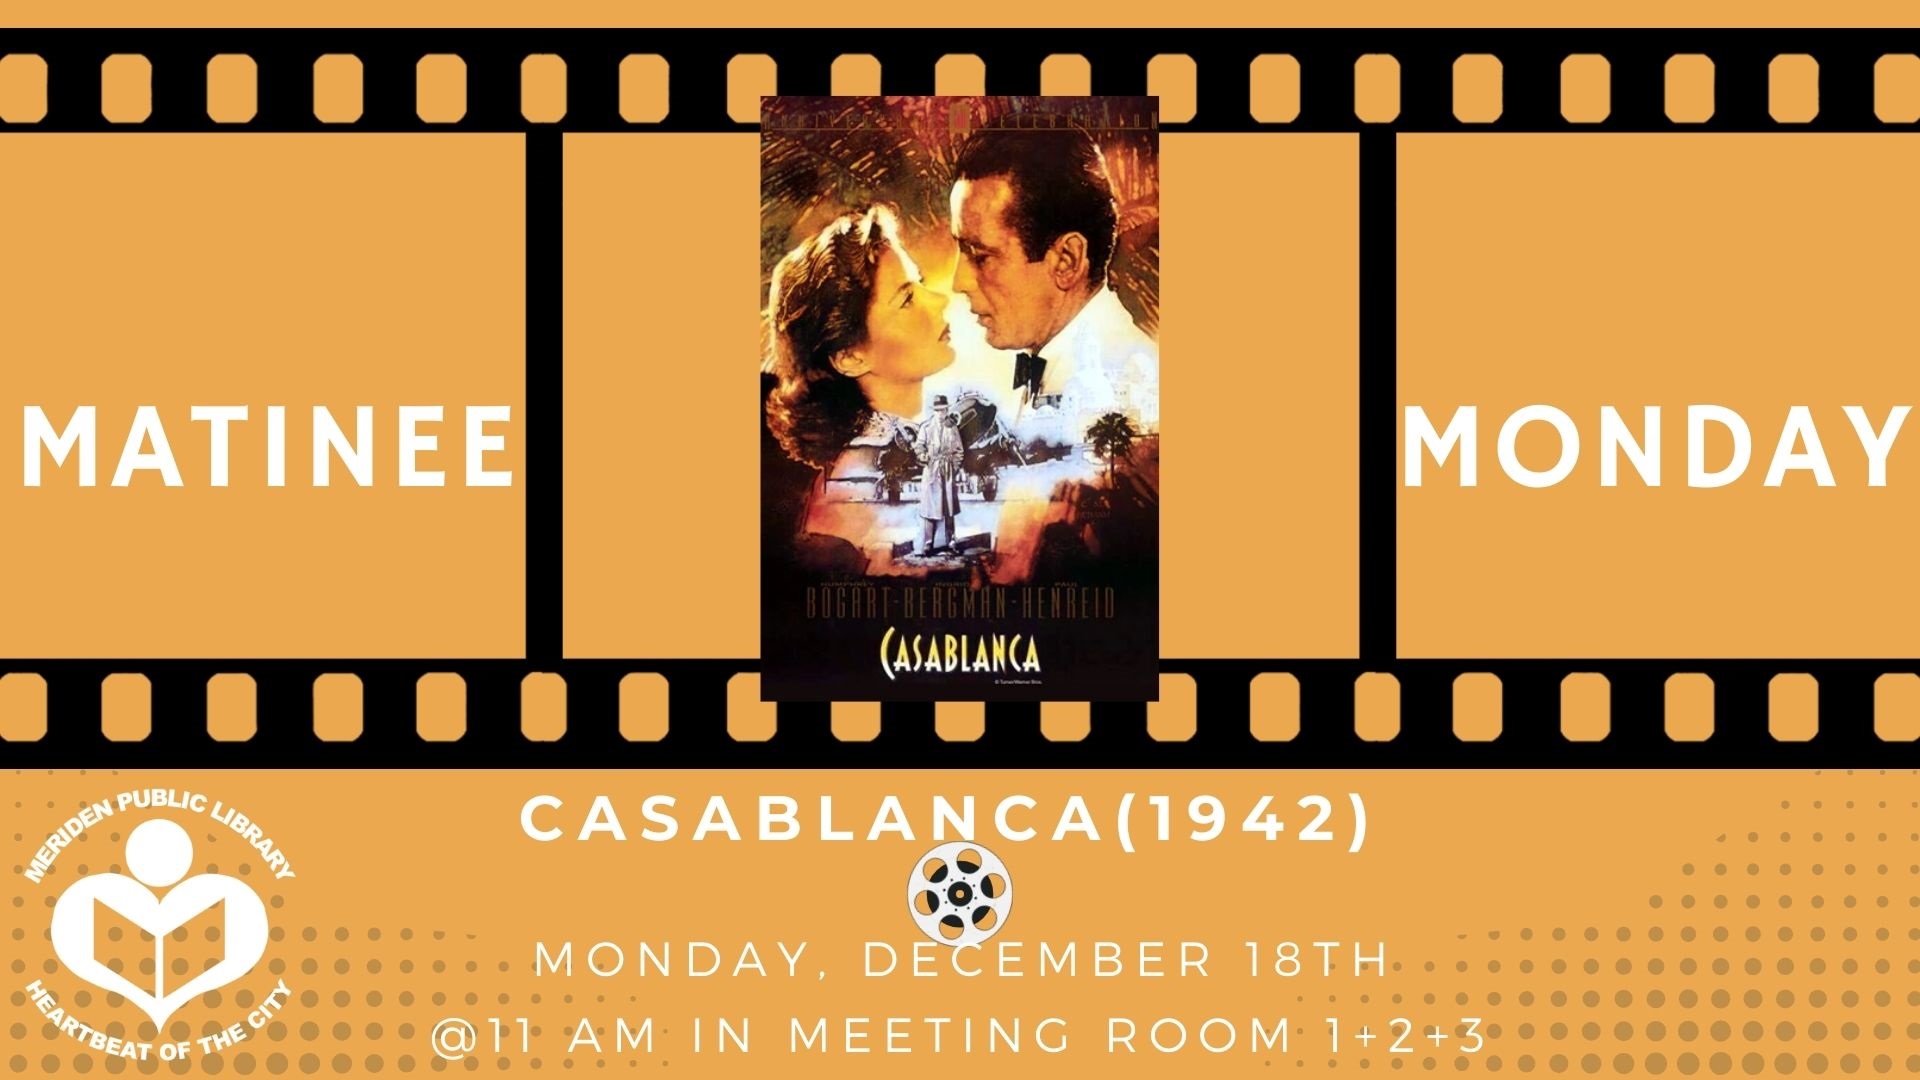 Casablanca film poster in between film reel 